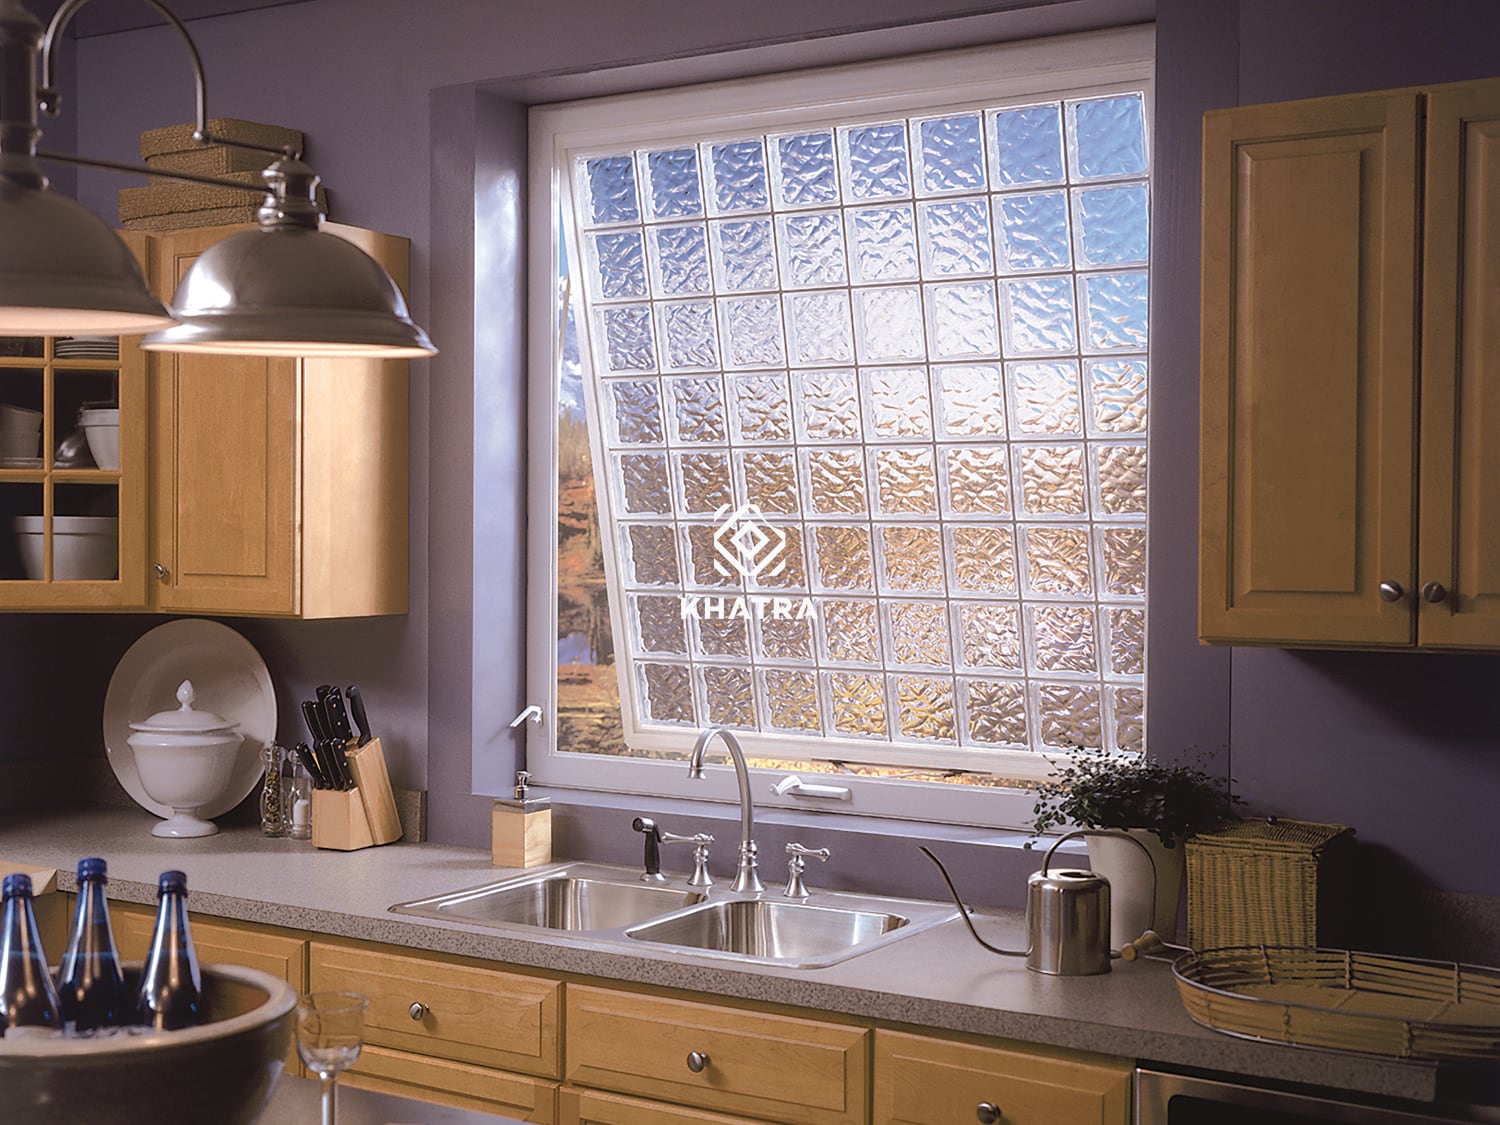 Gạch kính làm cửa sổ nhà bếp